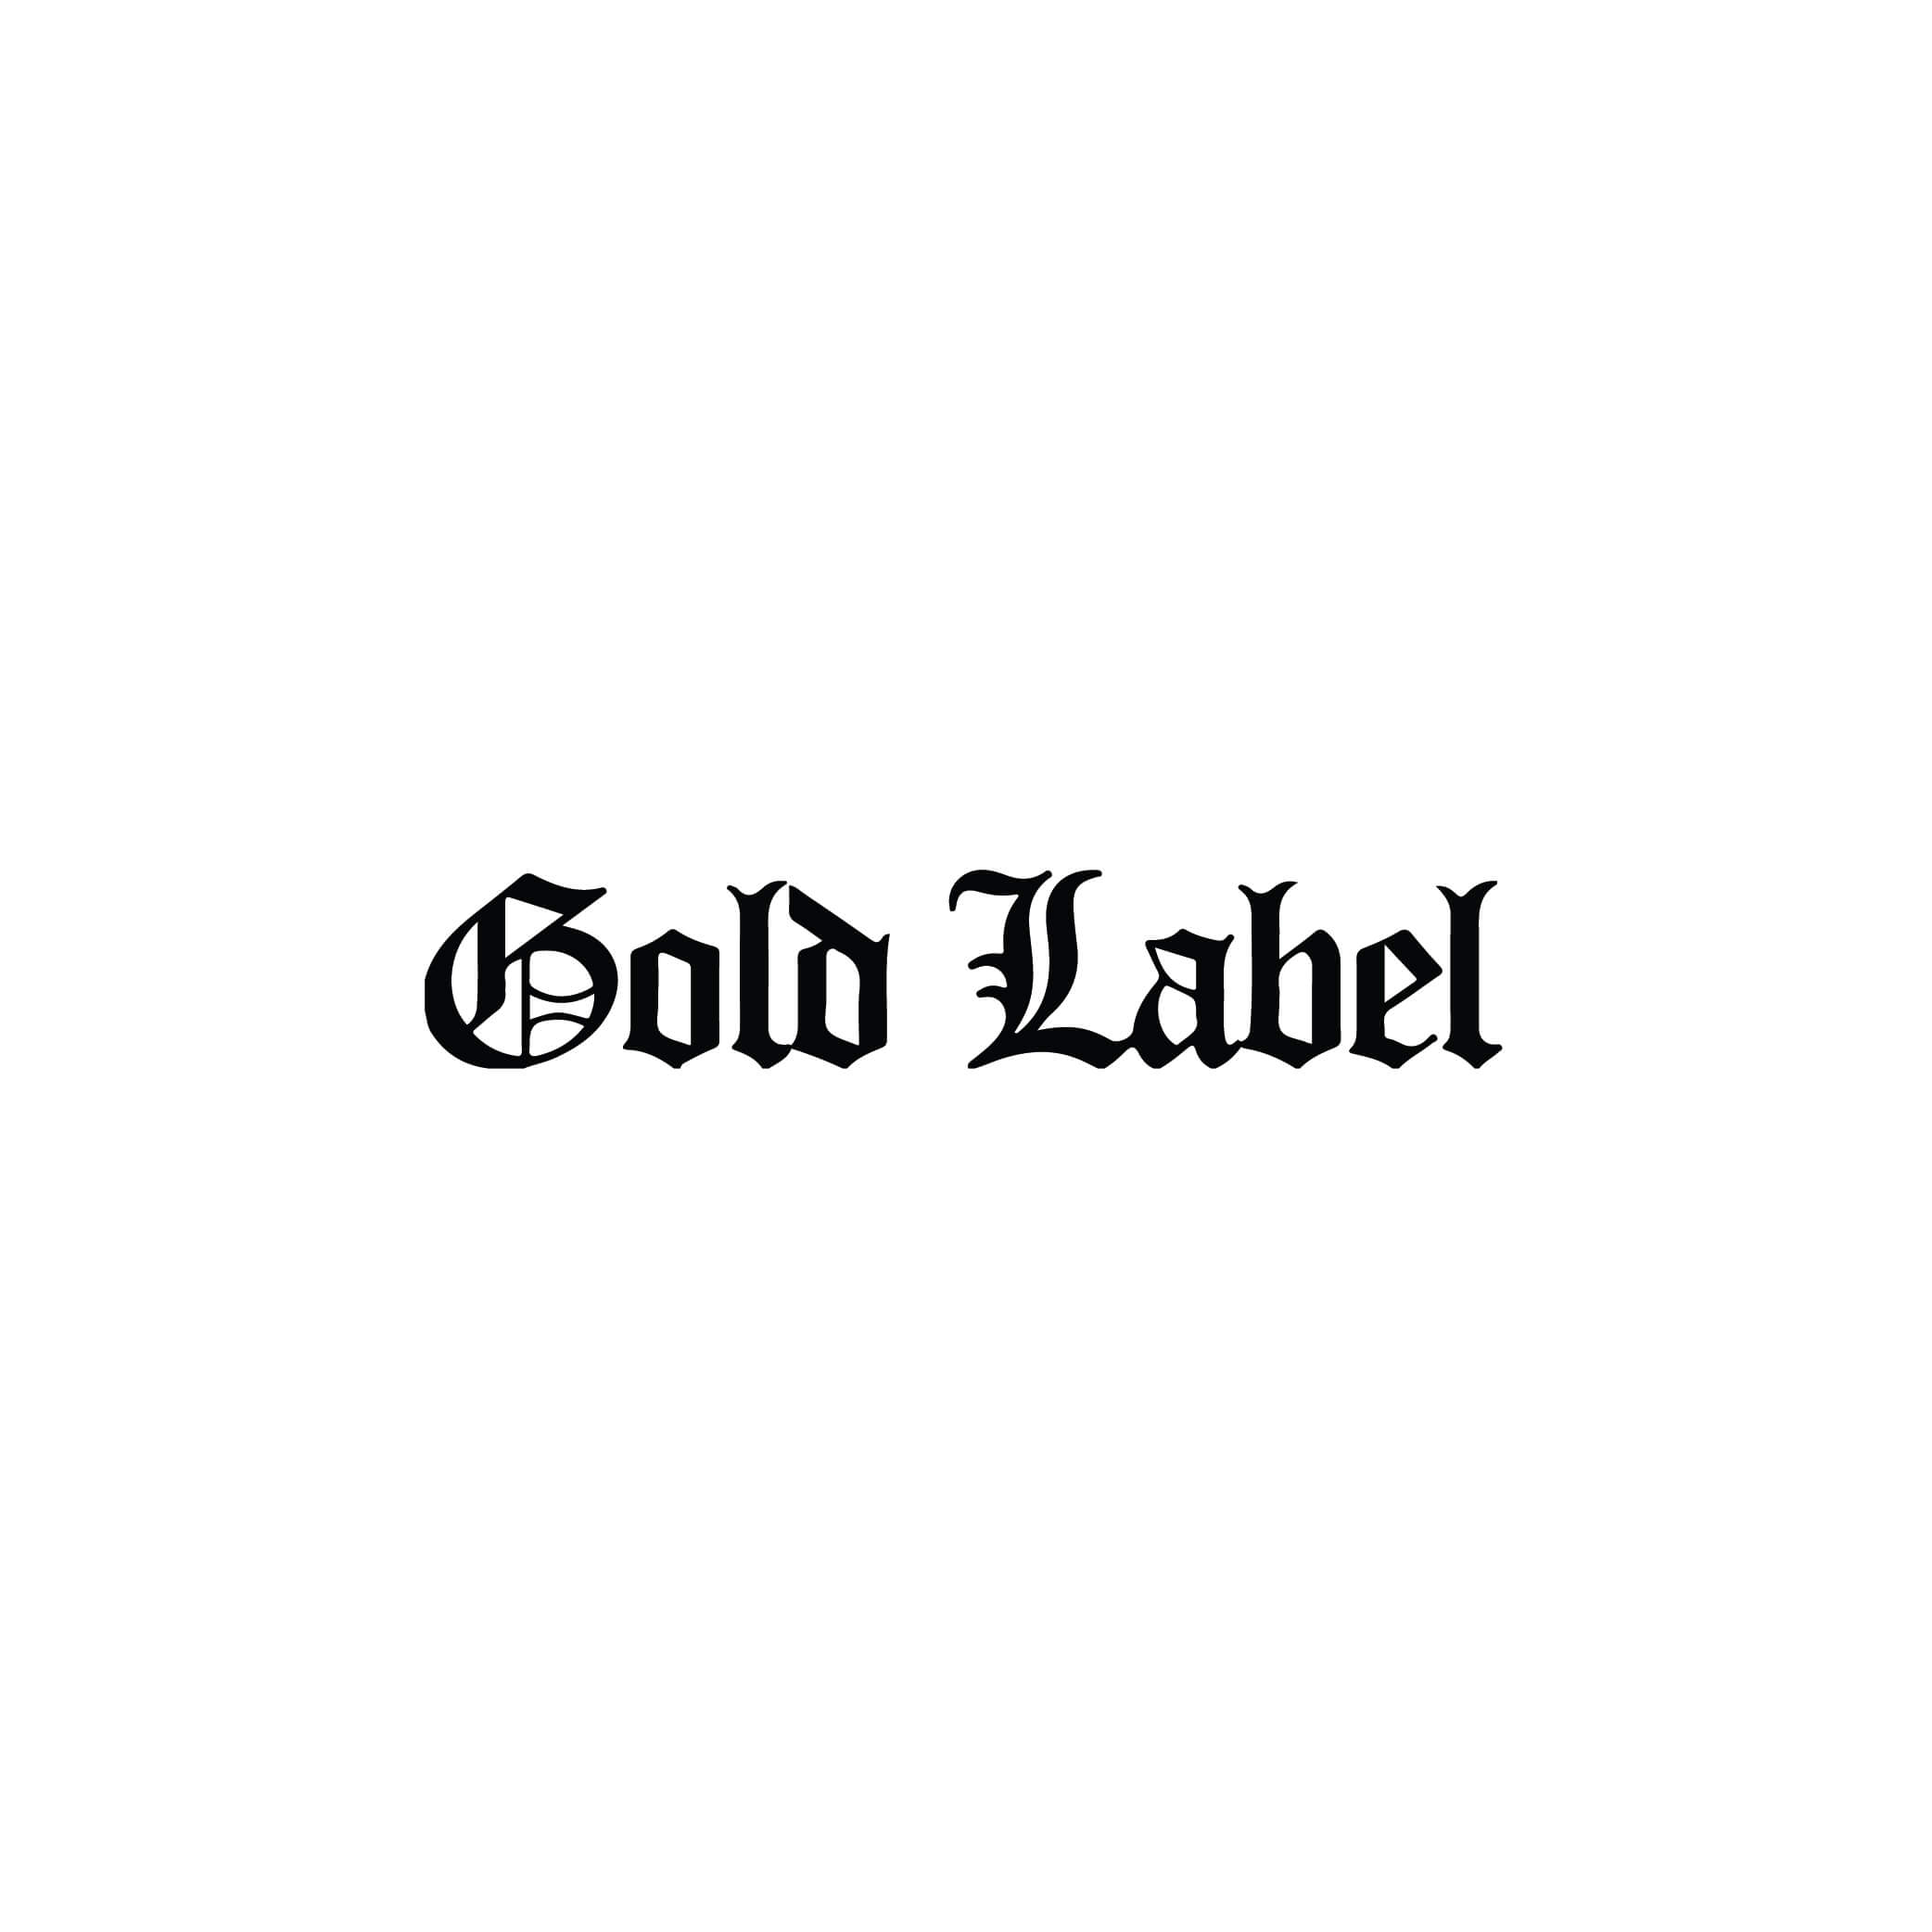 Gold Label Logo - gold label logo